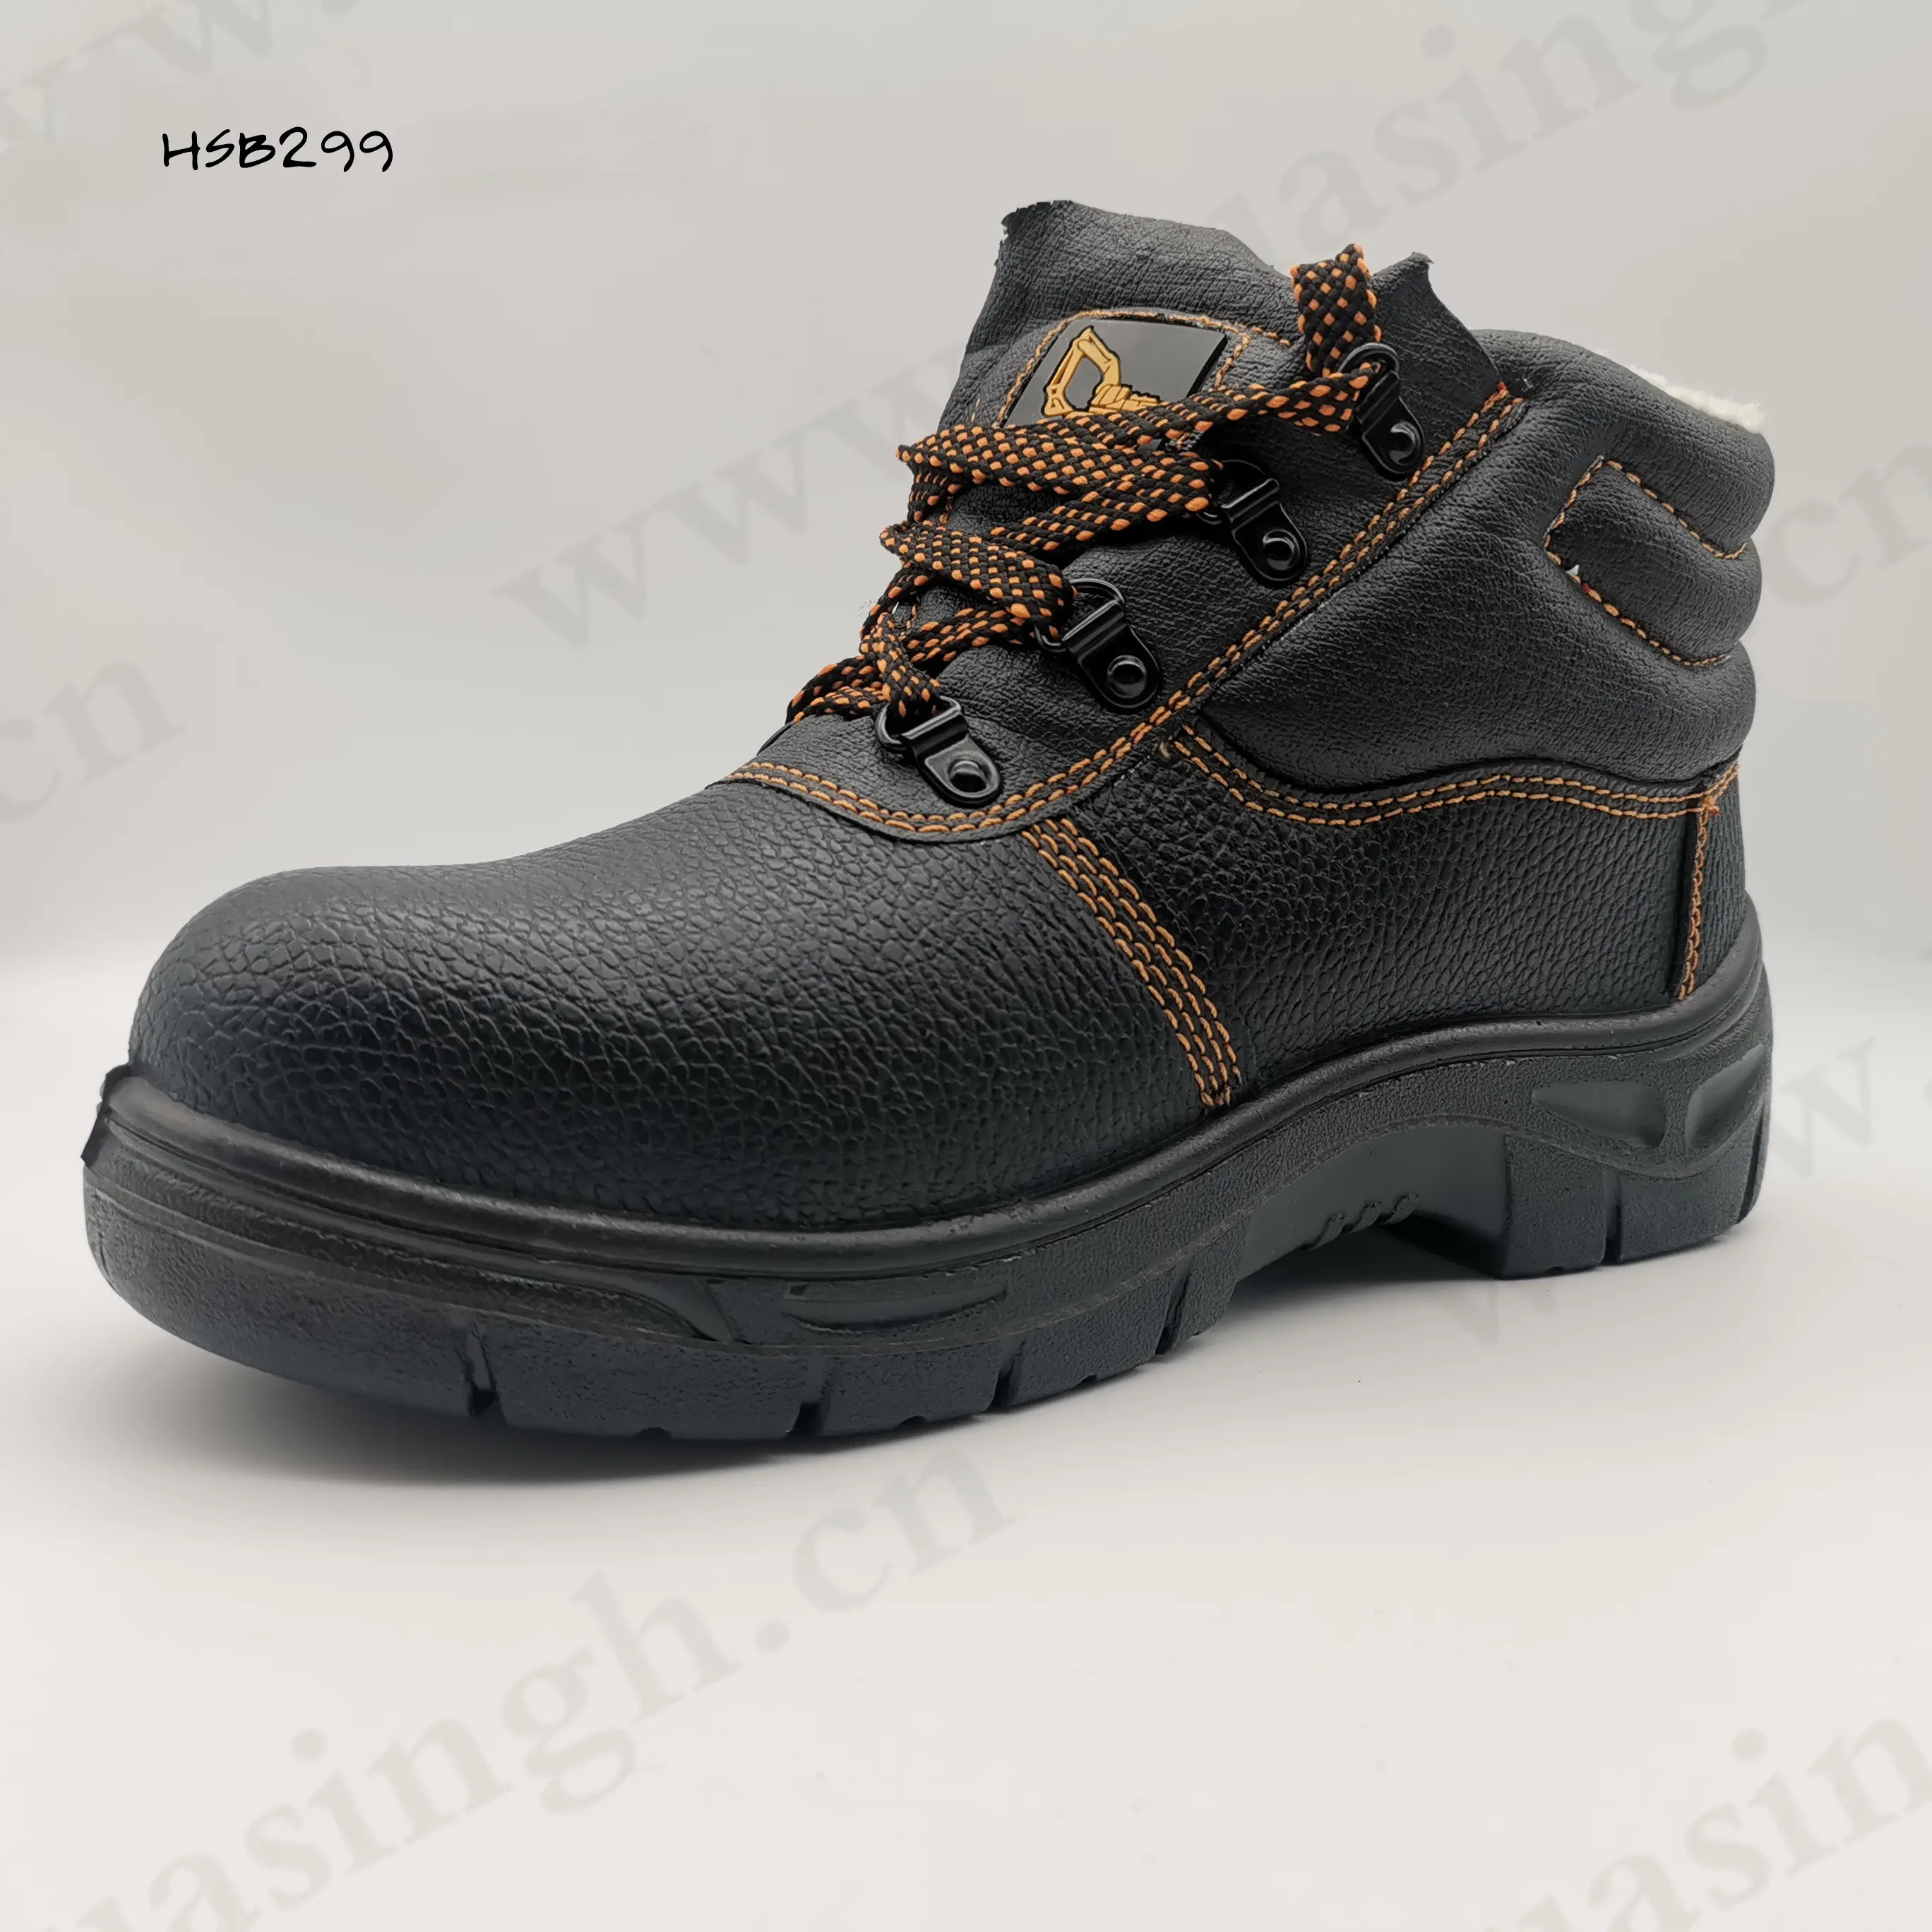 LXG ، صناعة المعادن ، أحذية أمان S3 بطانة صوف دافئة للبيع خفيفة الوزن بو/بو حقن نعل خارجي أحذية السلامة في فصل الشتاء HSB299